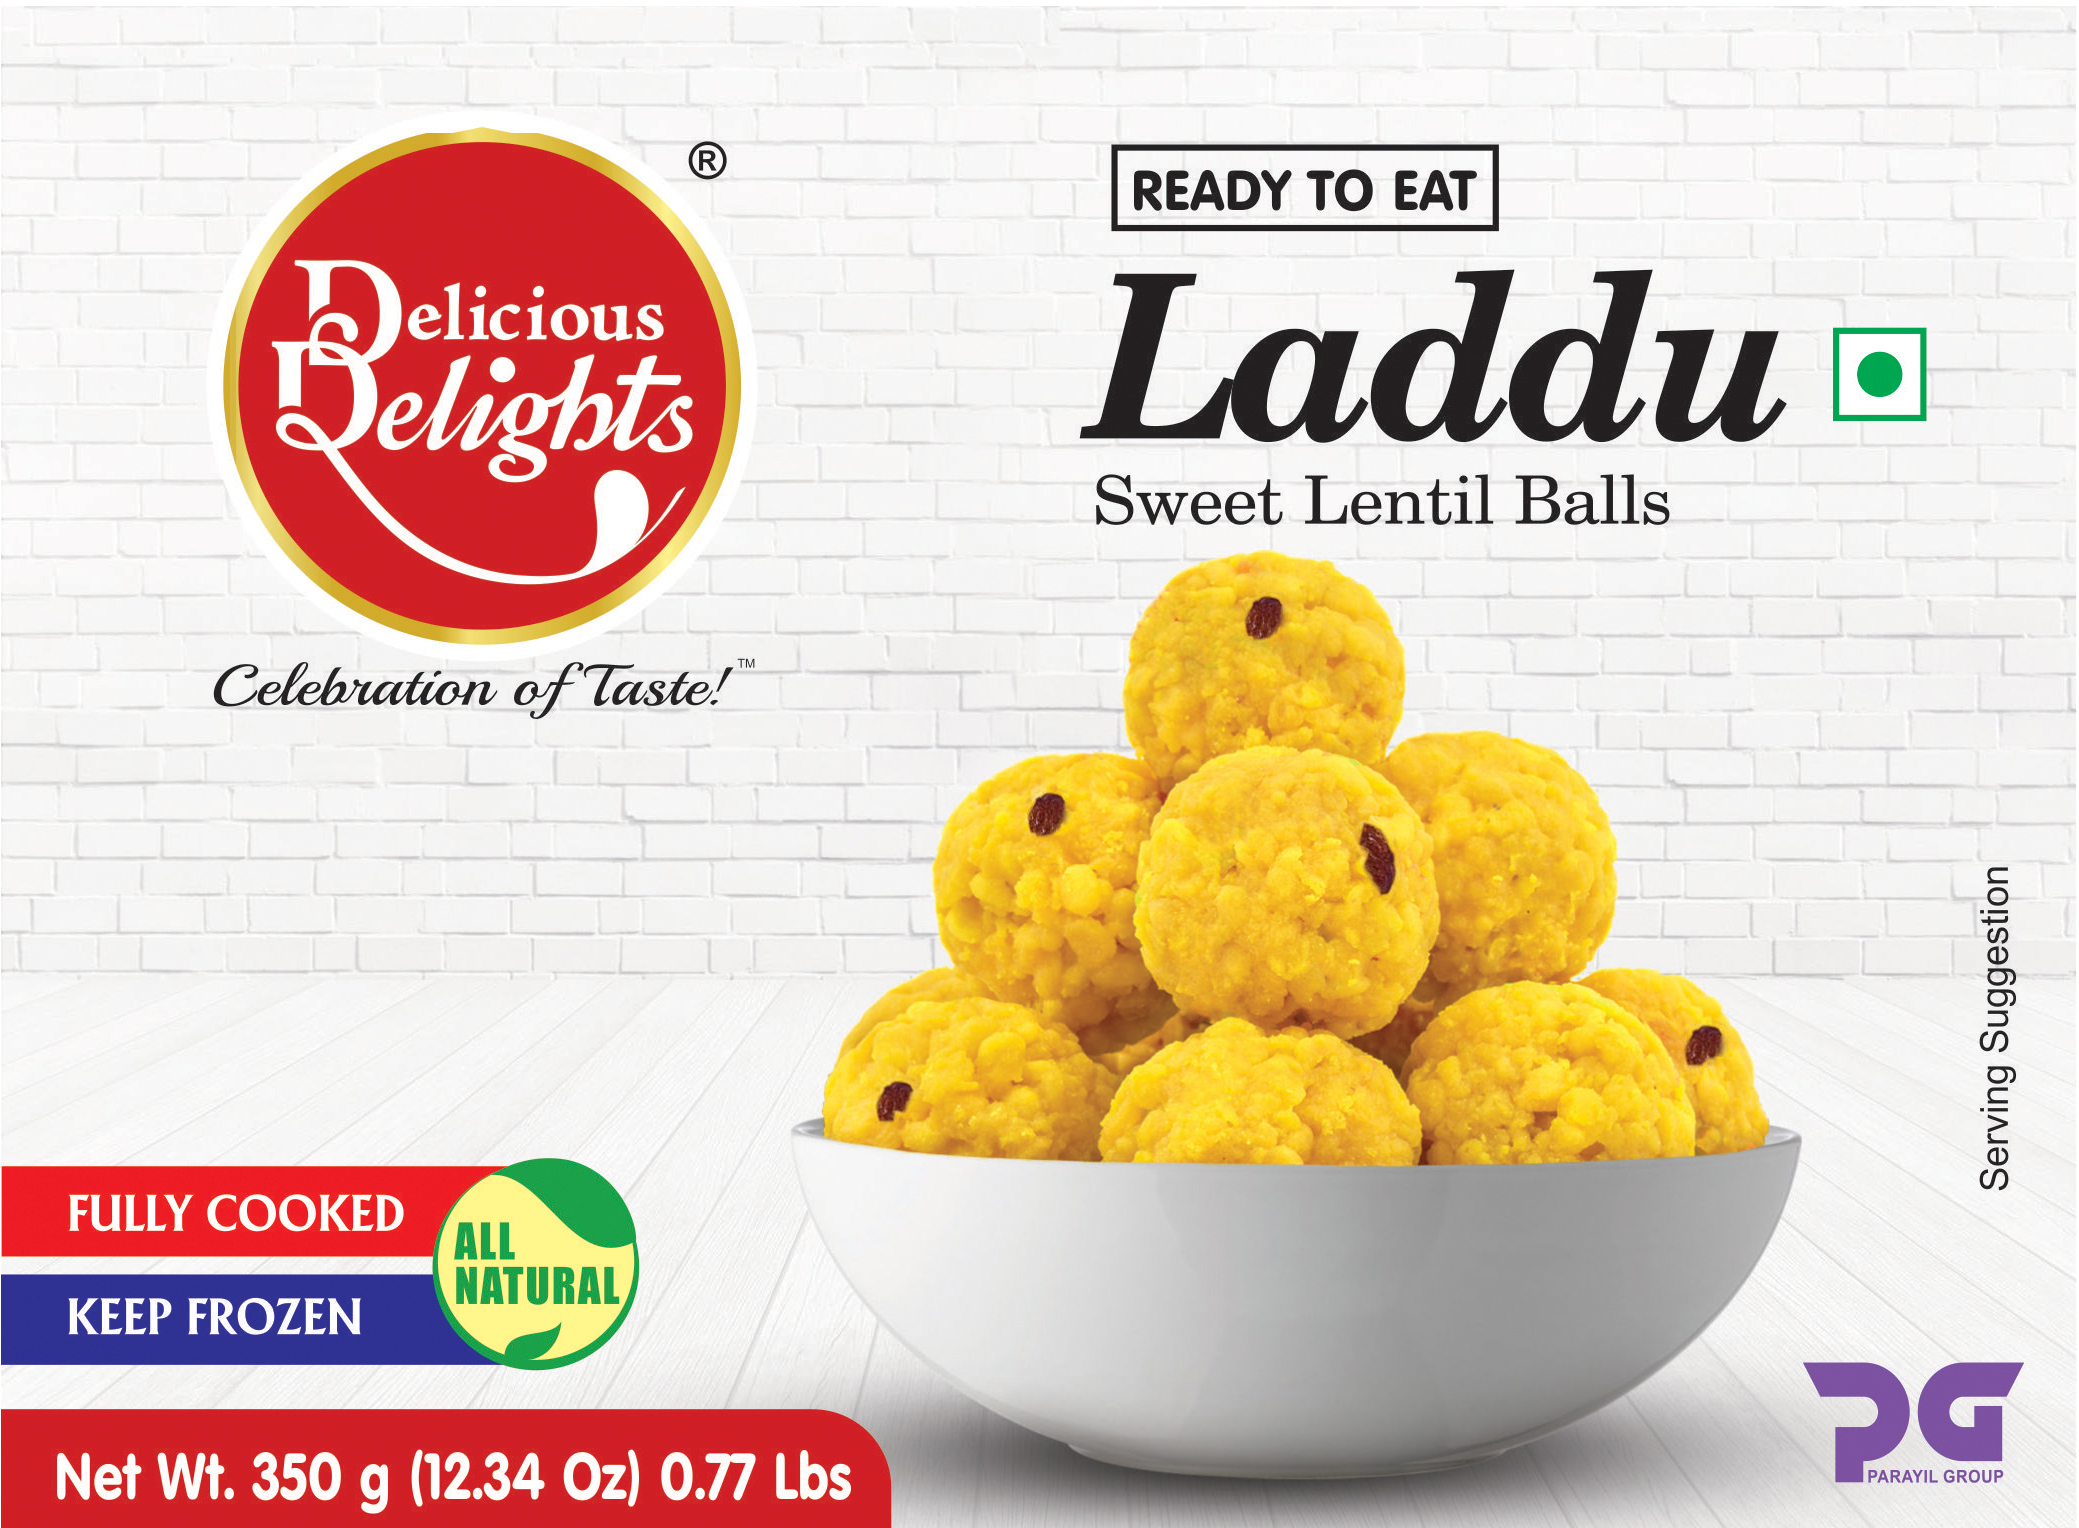 Delicious Delights Laddu